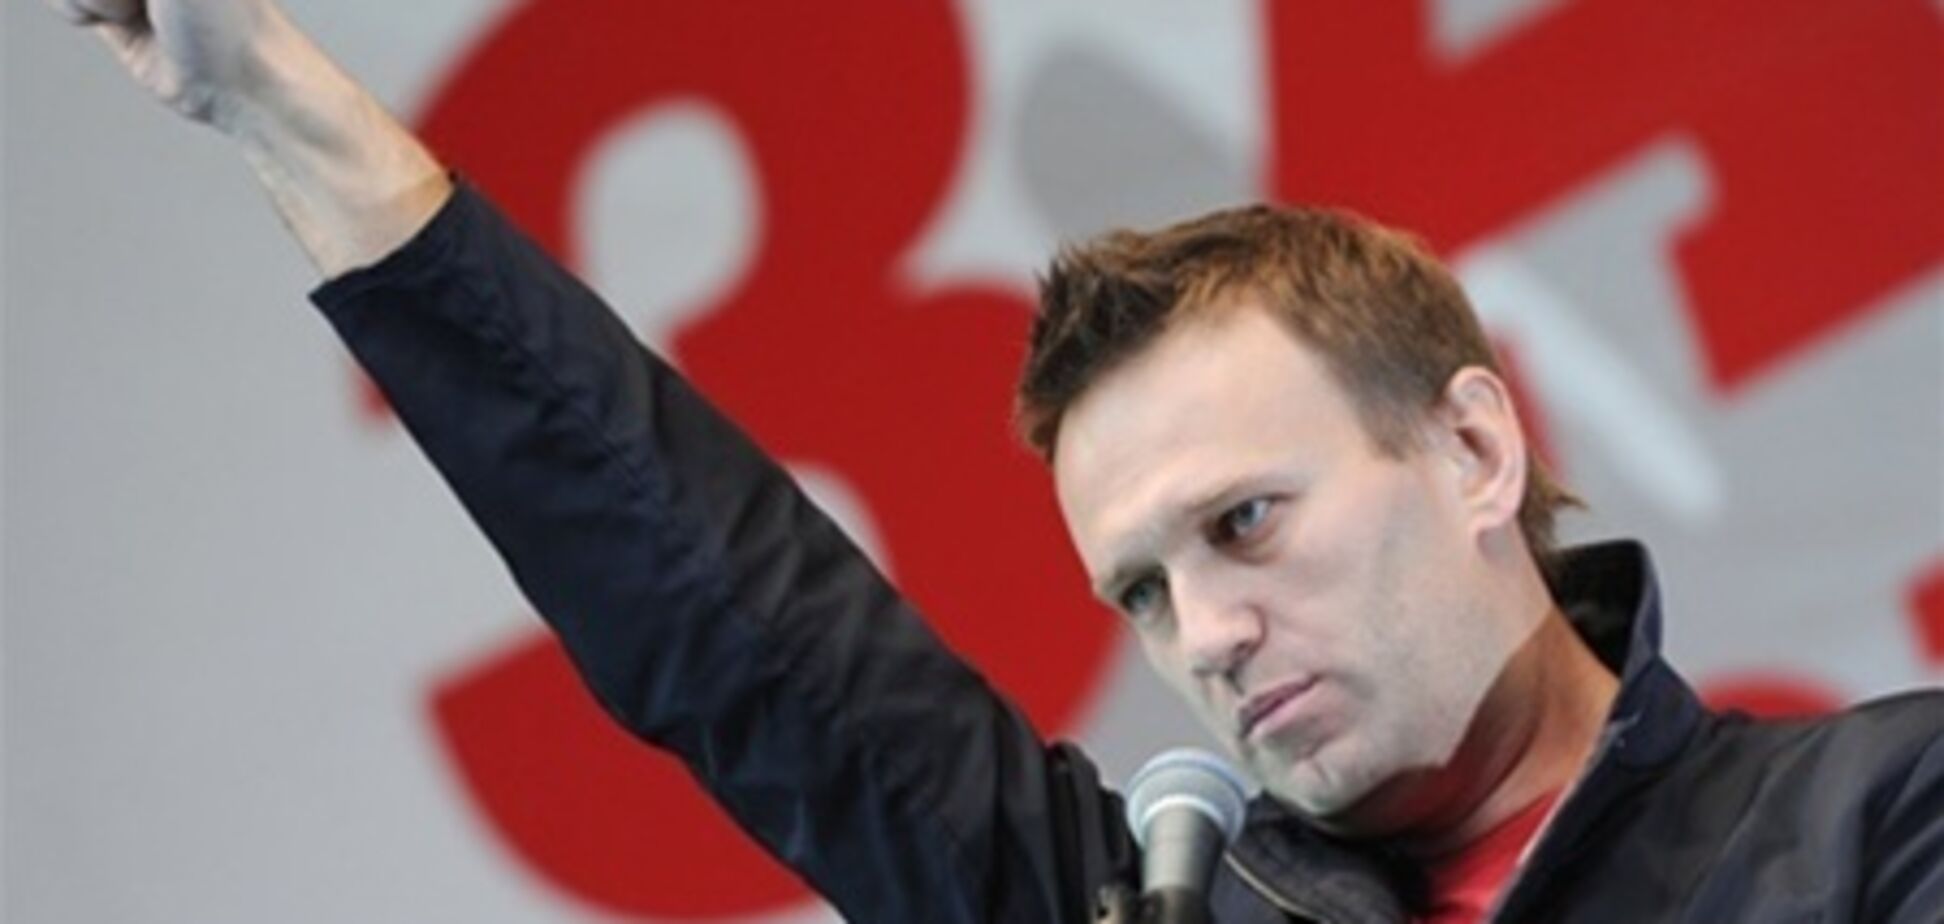 Прохоров и Навальный согласны лететь в космос - Жириновский